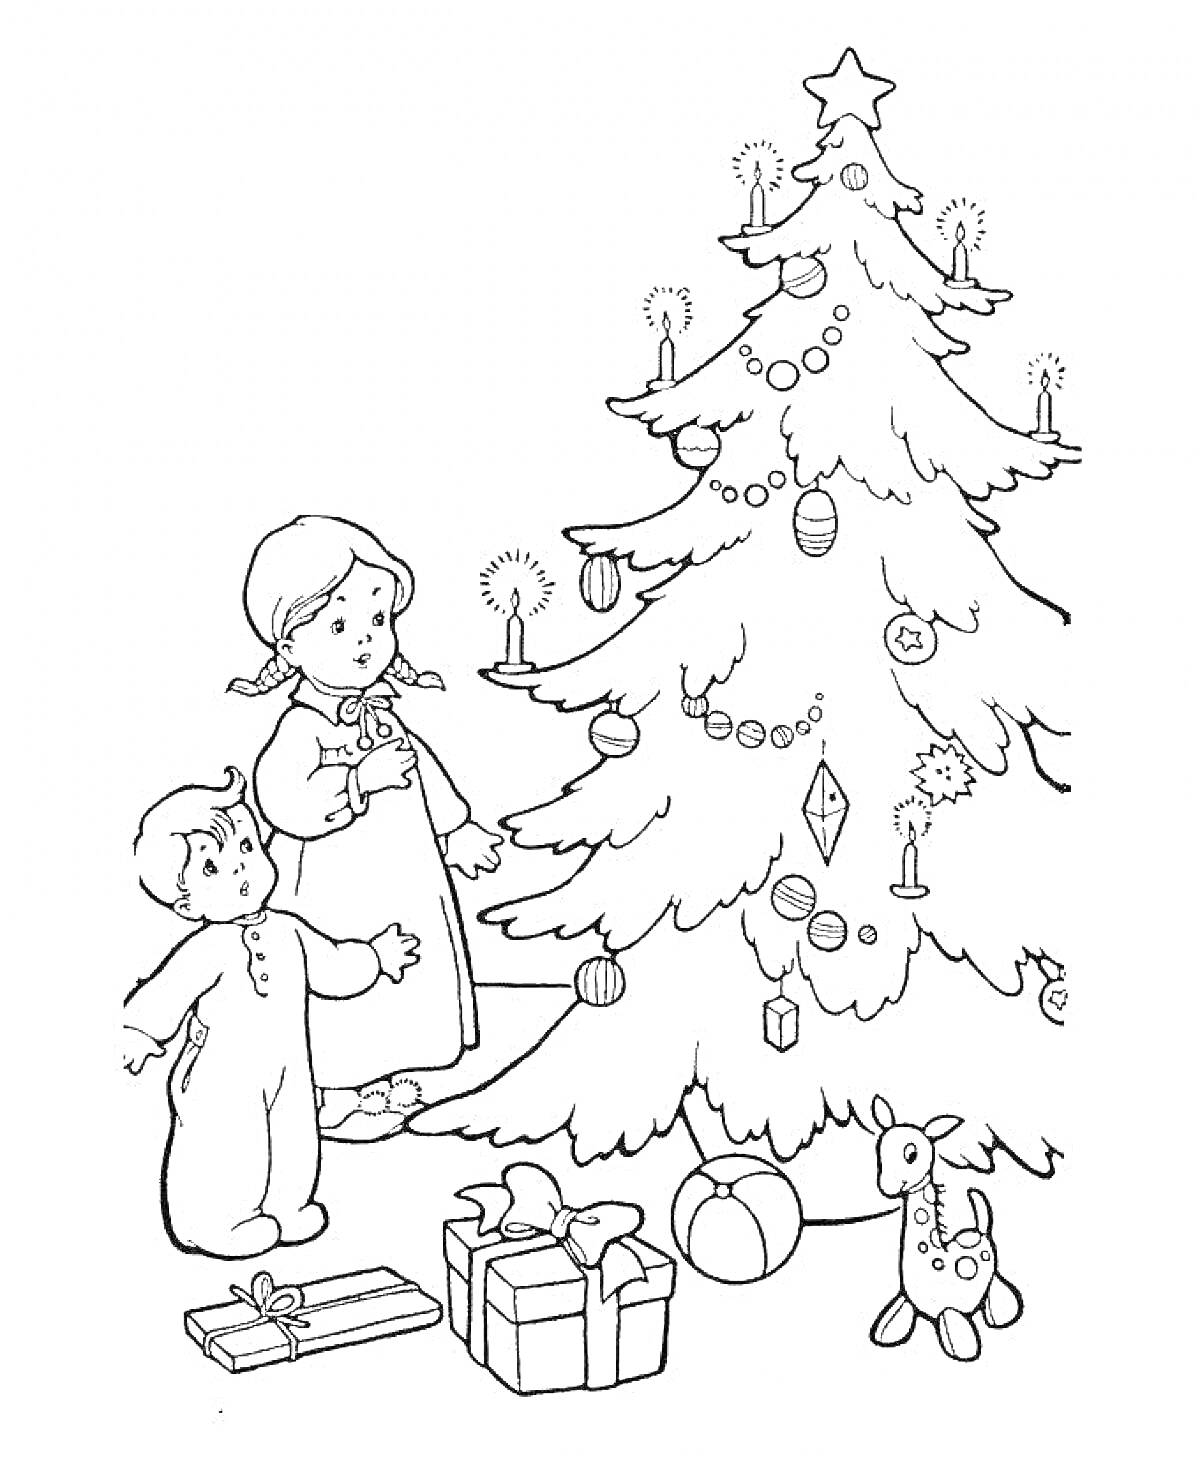 Дети рядом с рождественской елкой, украшенной игрушками и свечами, рядом подарки и игрушечный олень